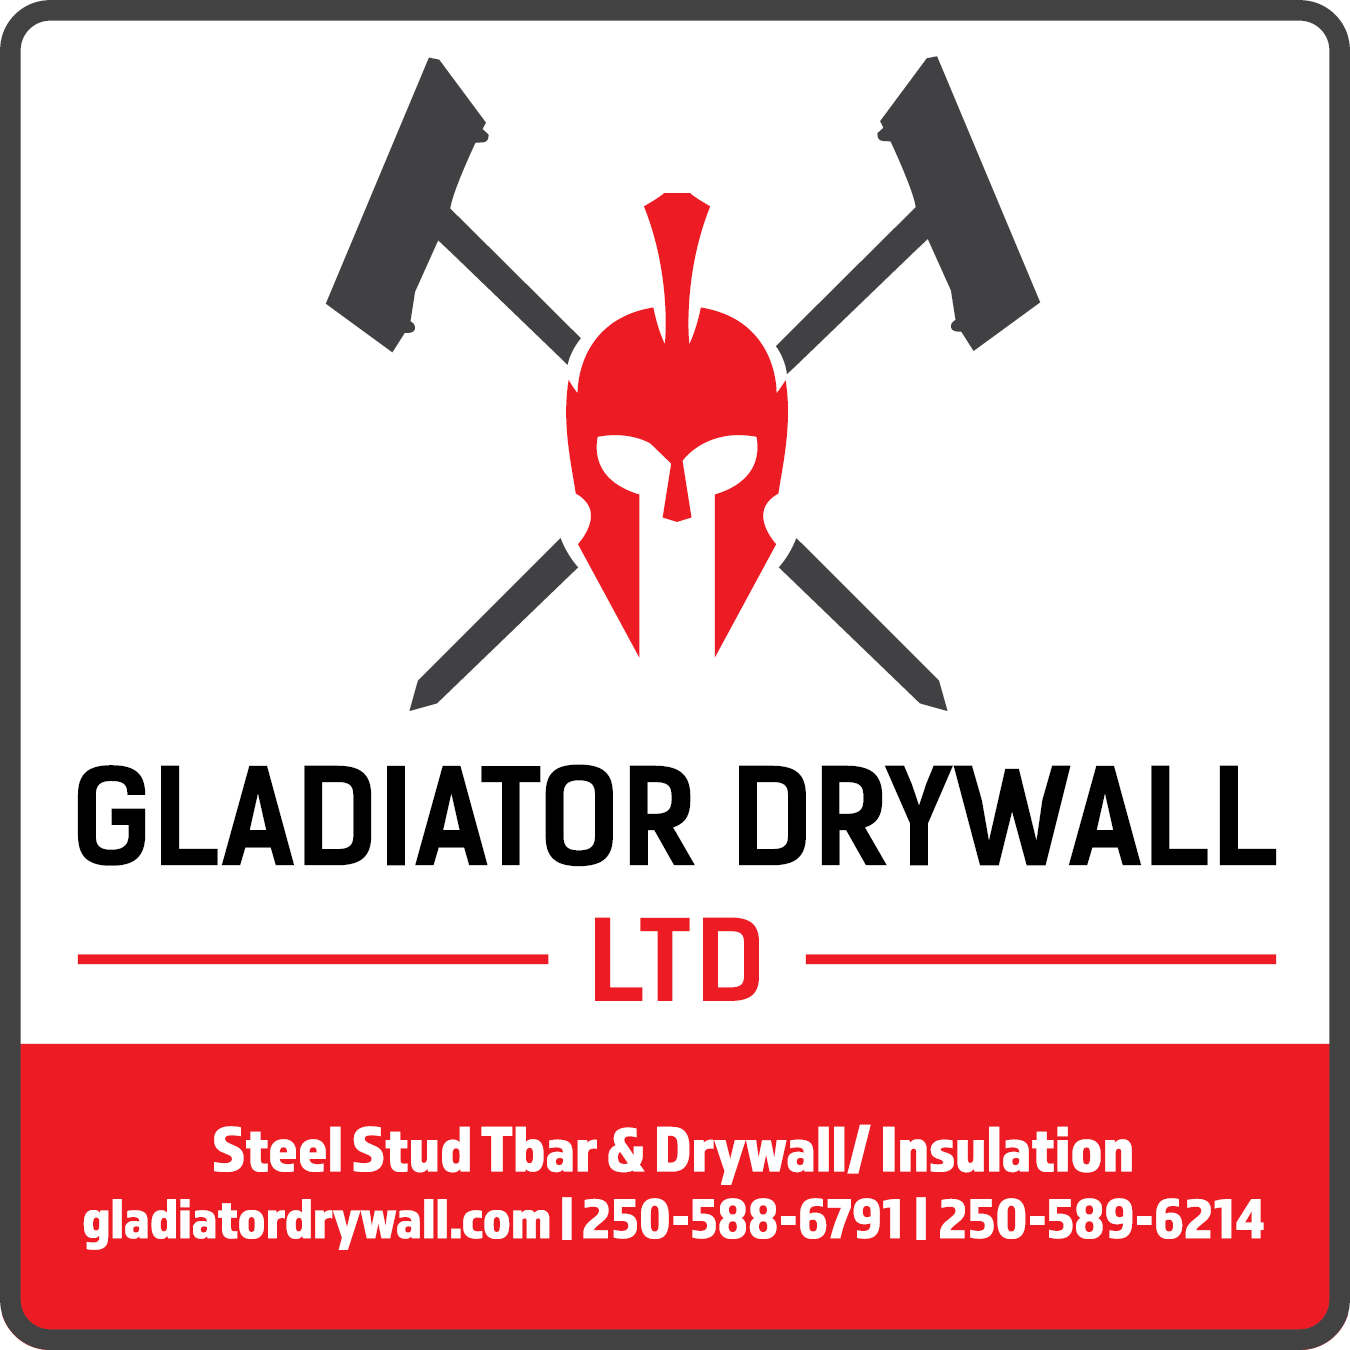 Gladiator Drywall